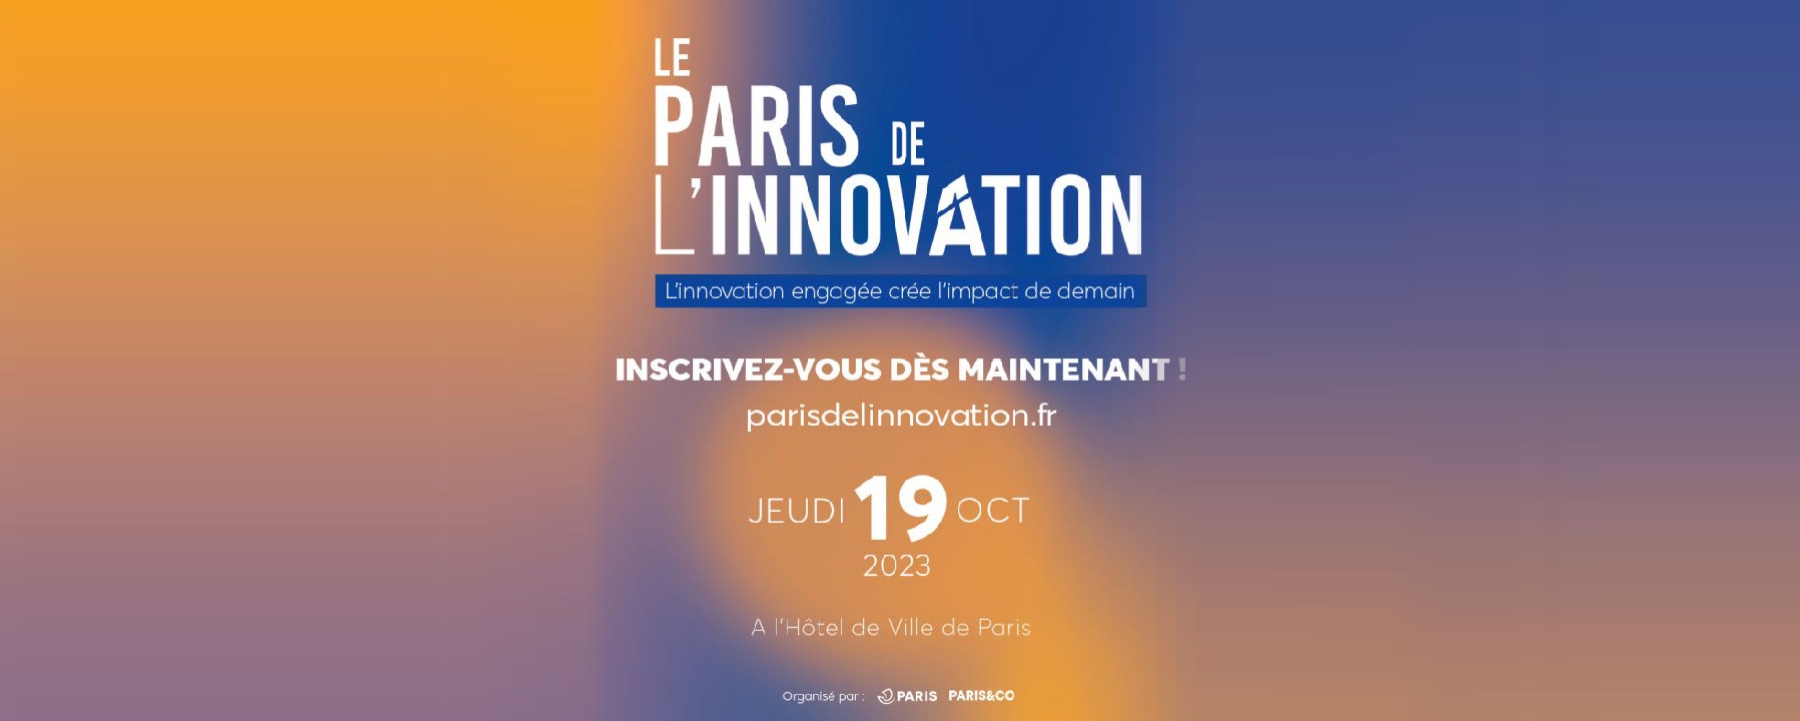 Paris de l'innovation 